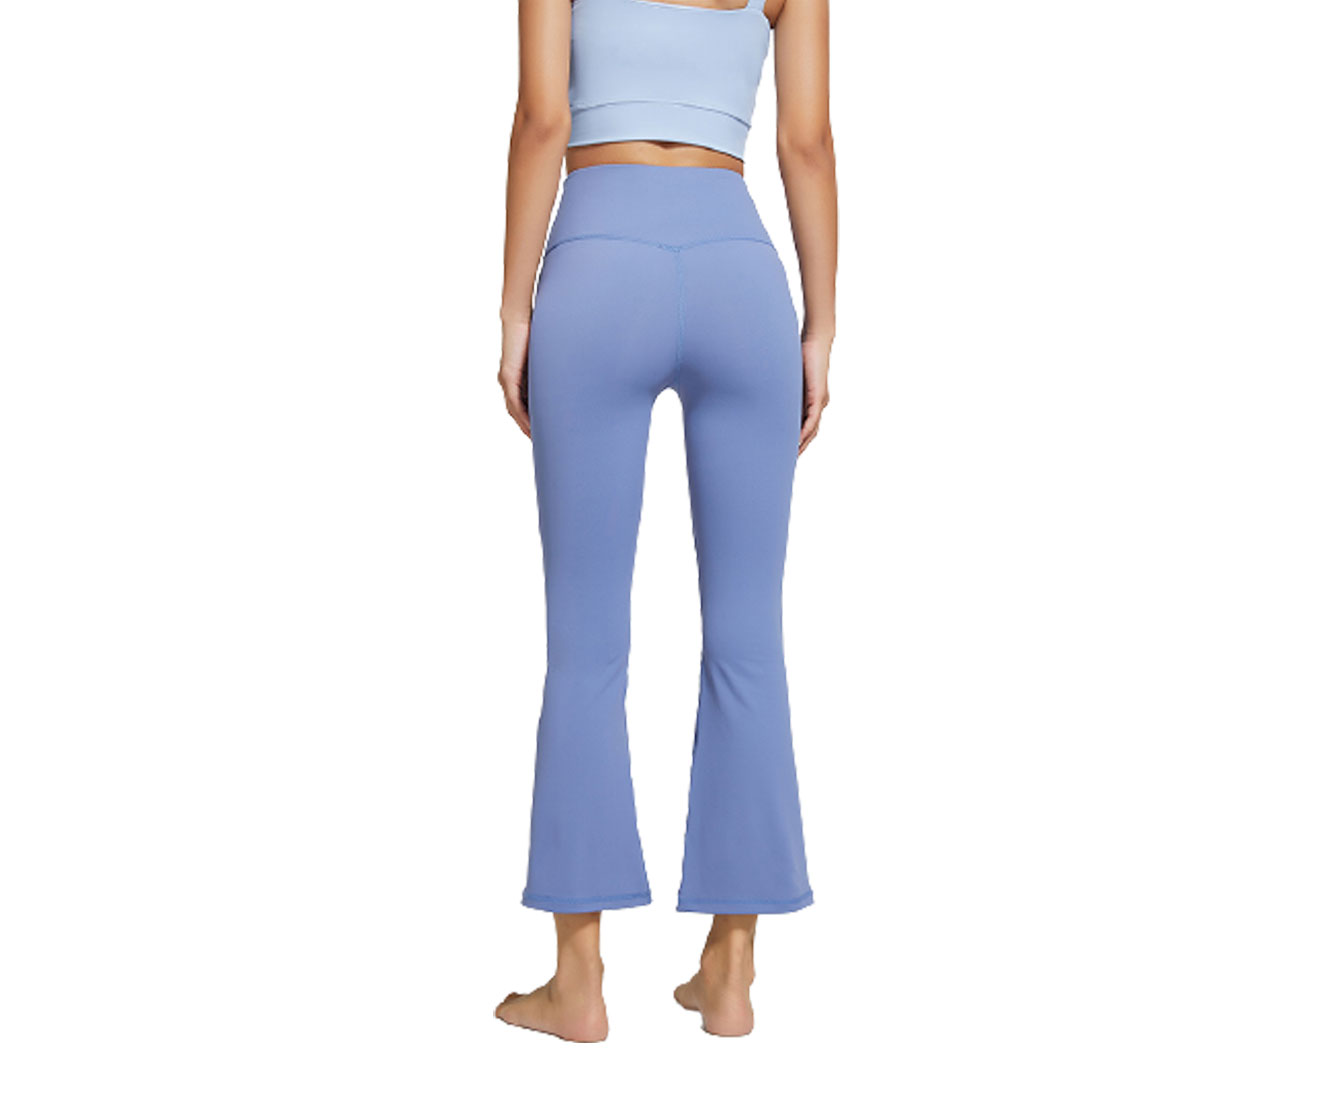 Women's Bootcut Yoga Pants